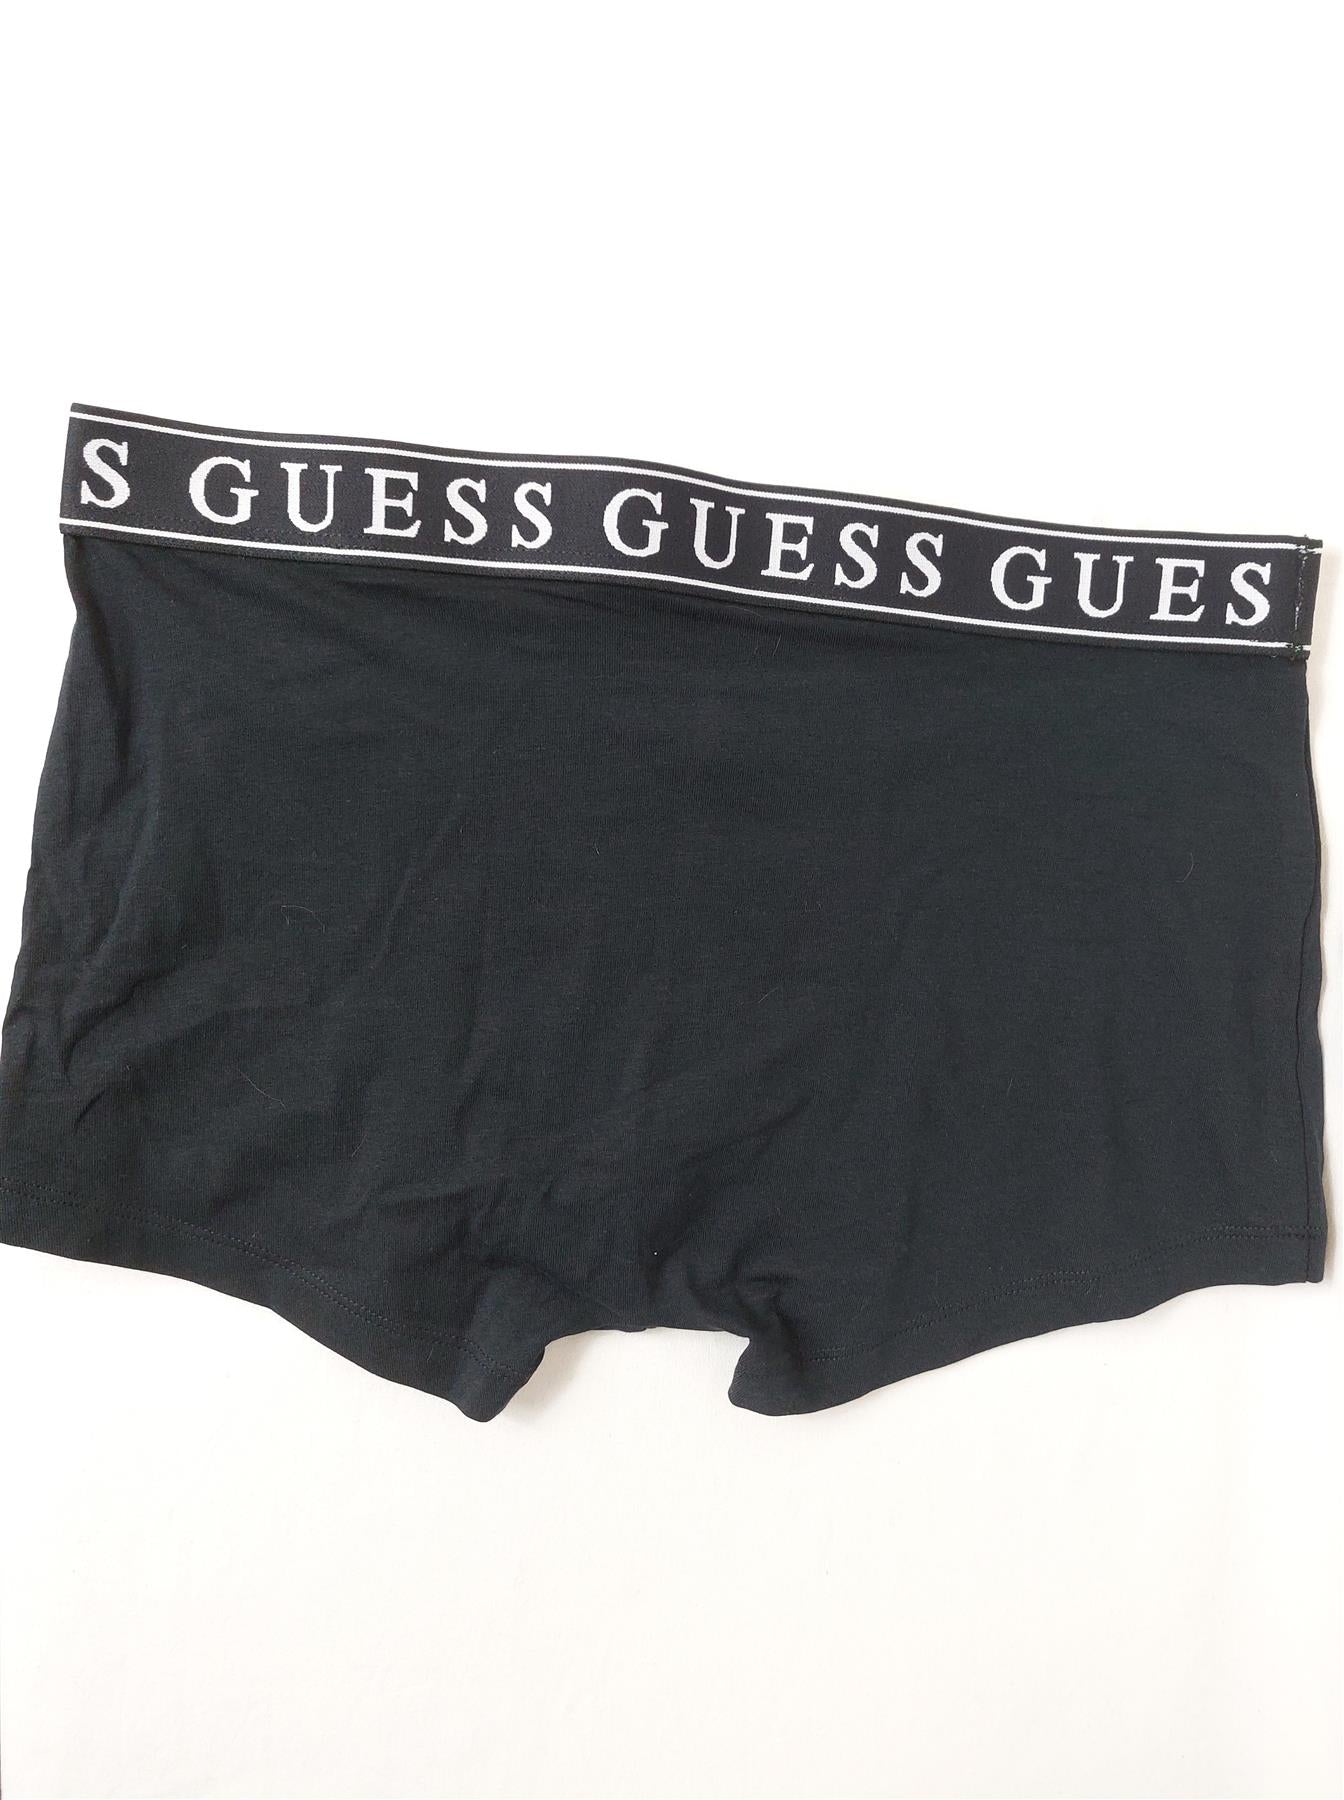 Guess Men's Boxers 3-Pack Cotton Rich Boxer Shorts Trunks Underpants Multipack